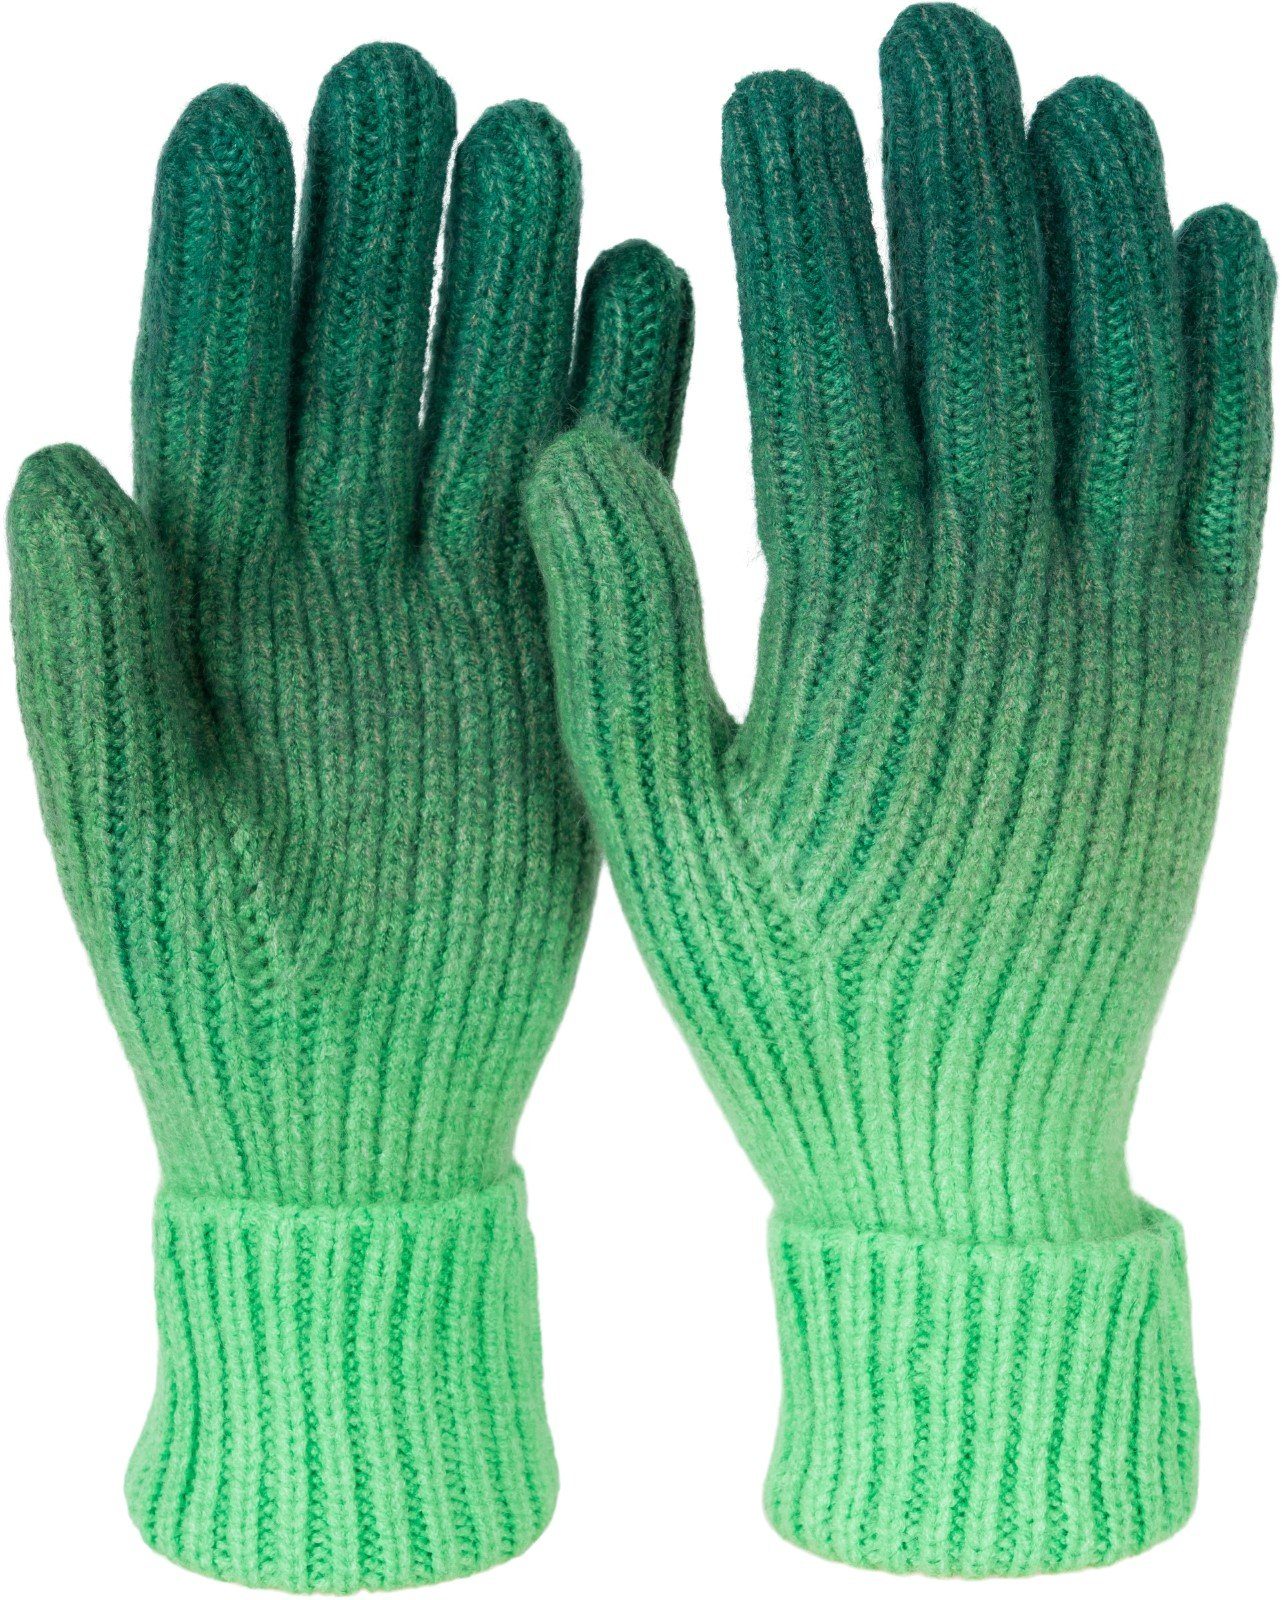 styleBREAKER Strickhandschuhe Strickhandschuhe Farbverlauf Muster Dunkelgrün-Grün